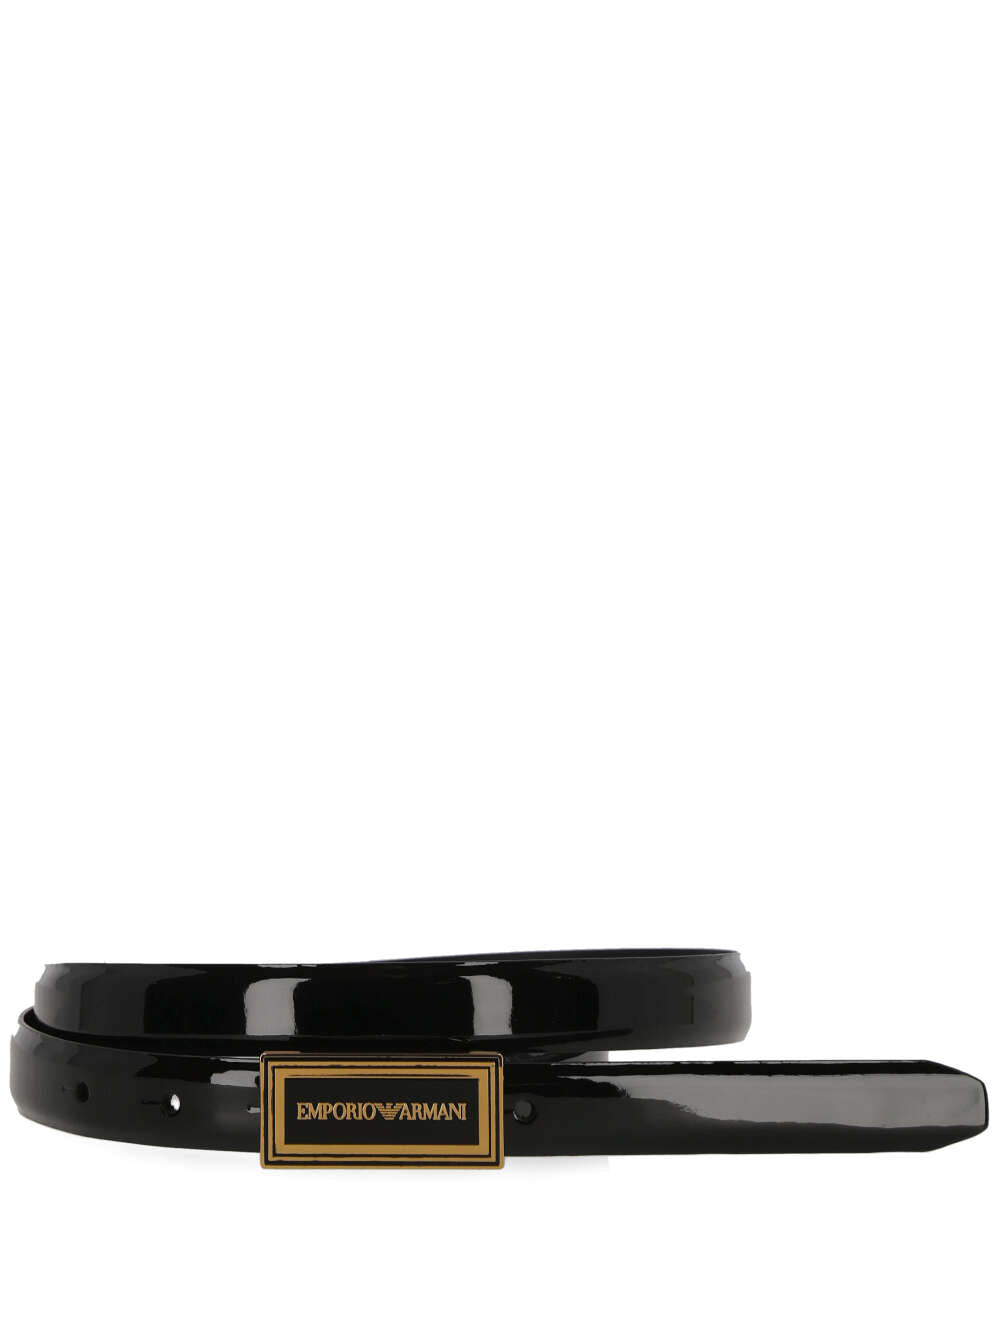 Emporio Armani Y4S610 Man Black Belts - Zuklat